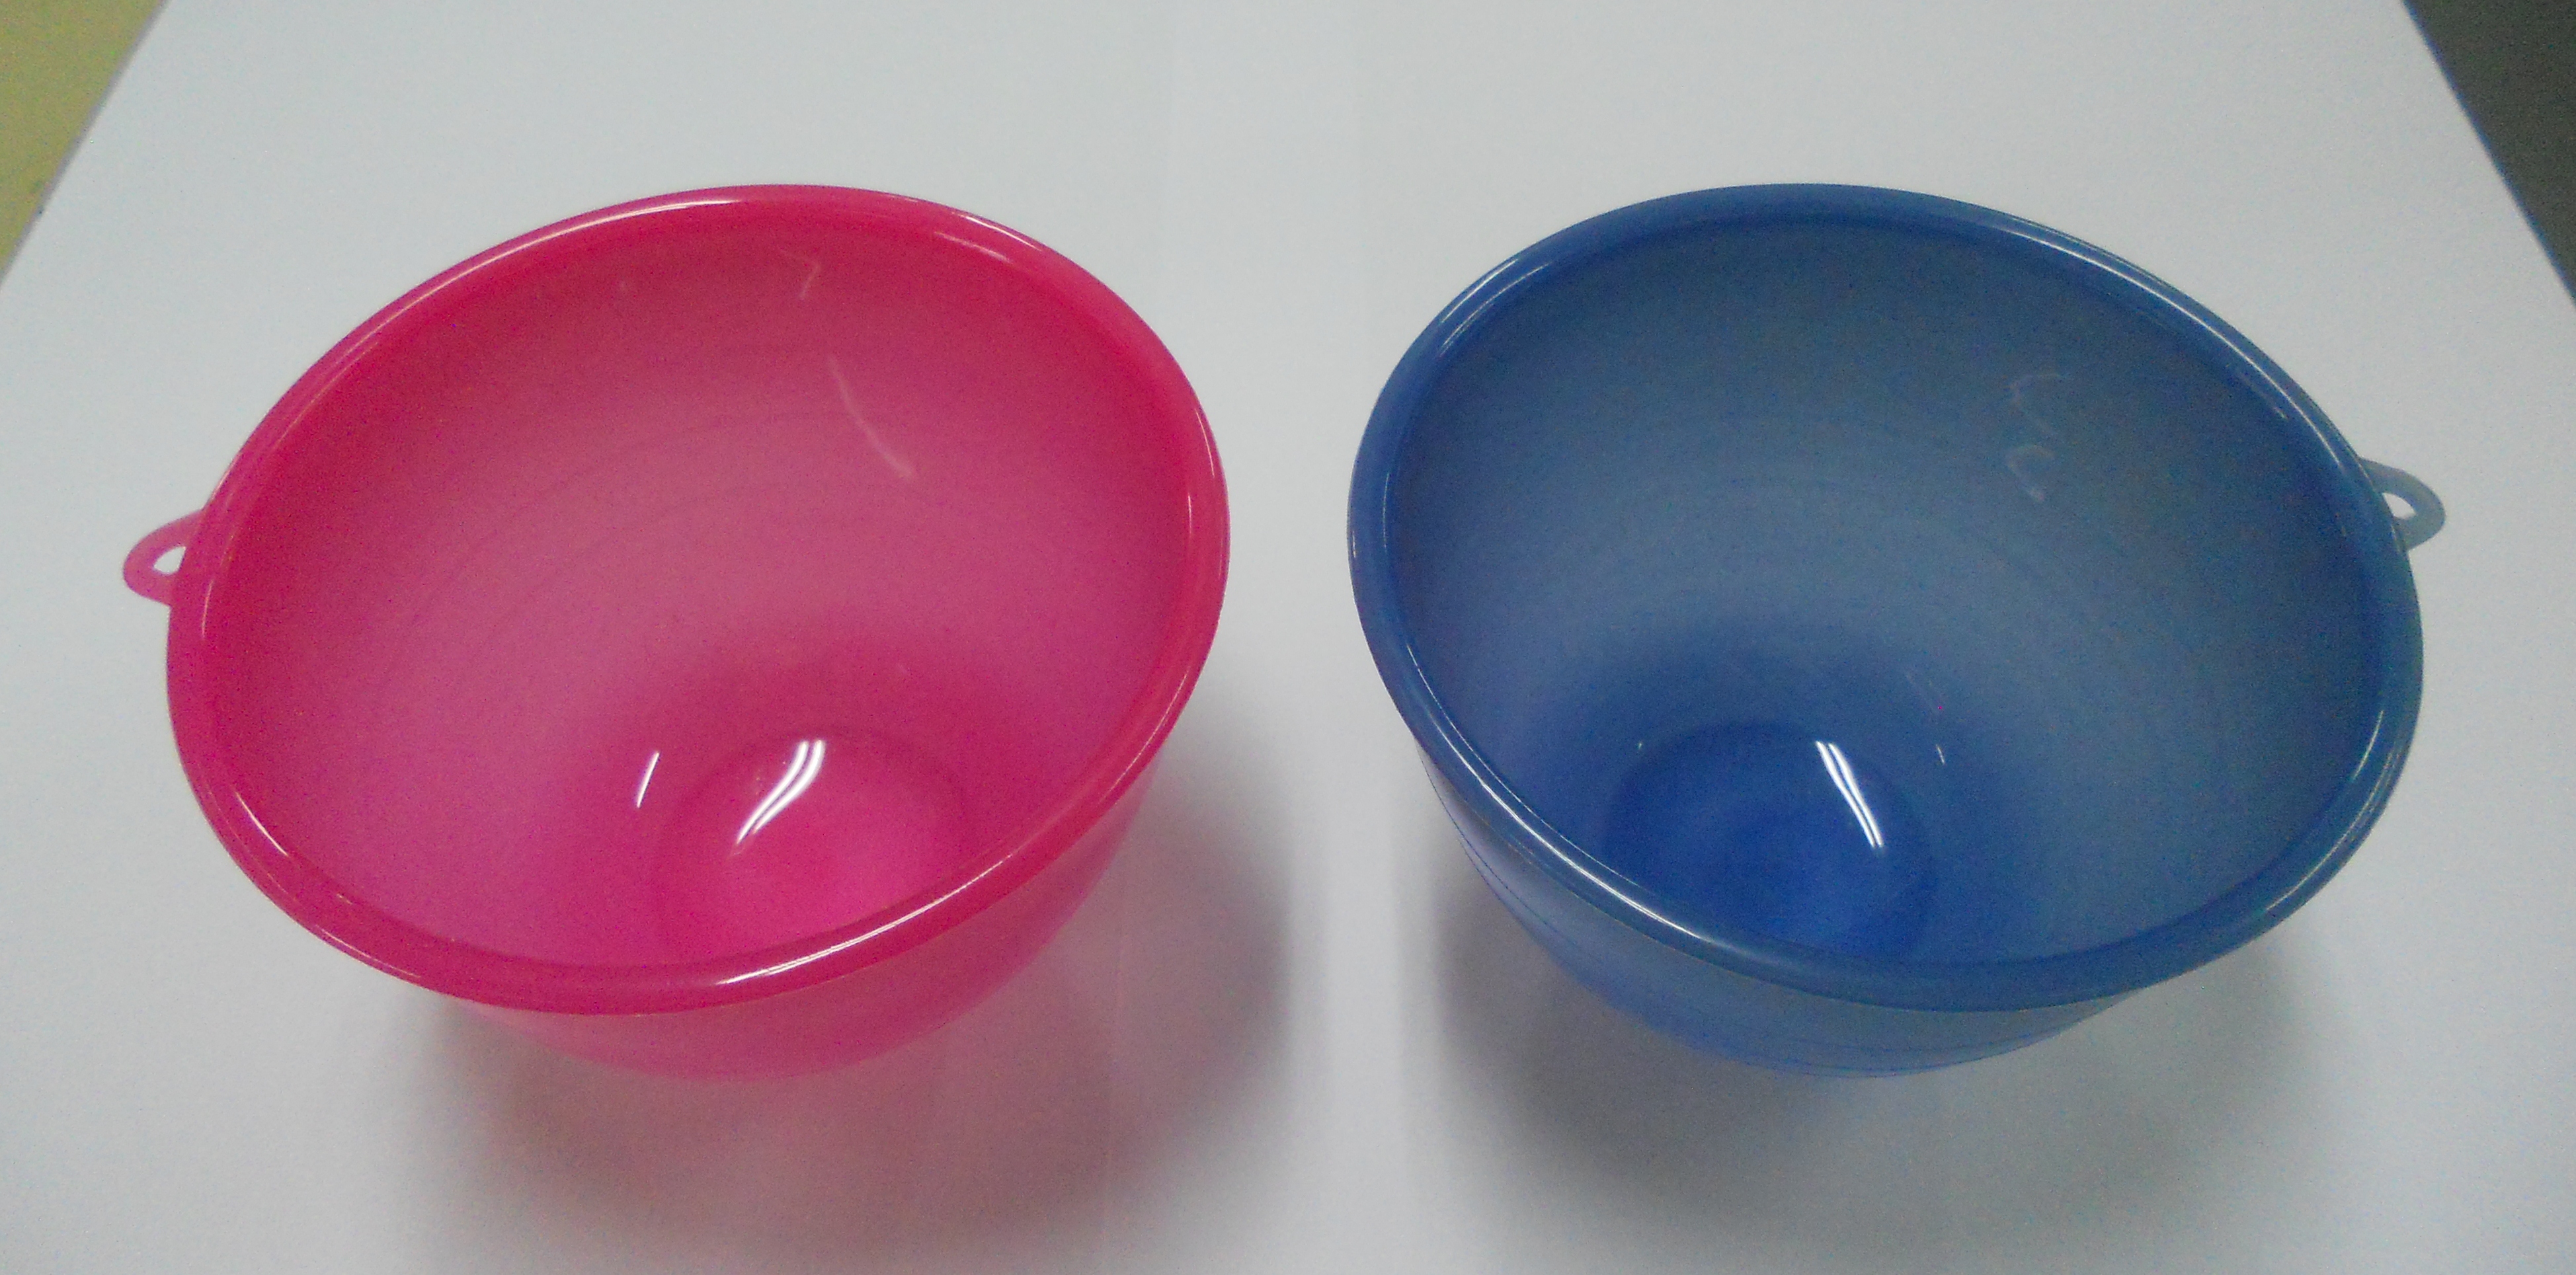 thermal bowls